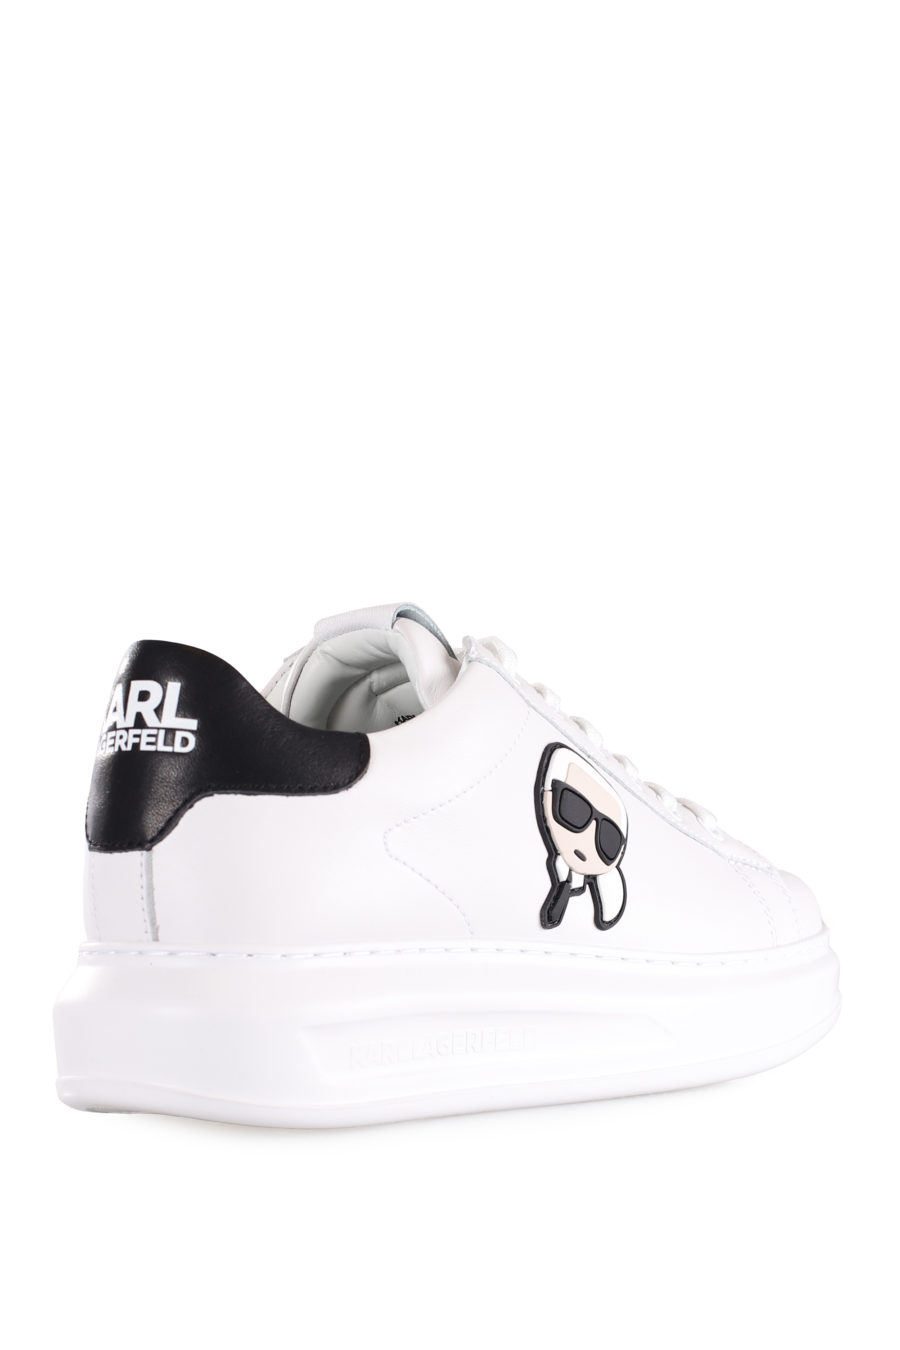 Zapatillas blancas con logo "Karl" en goma - IMG 9582